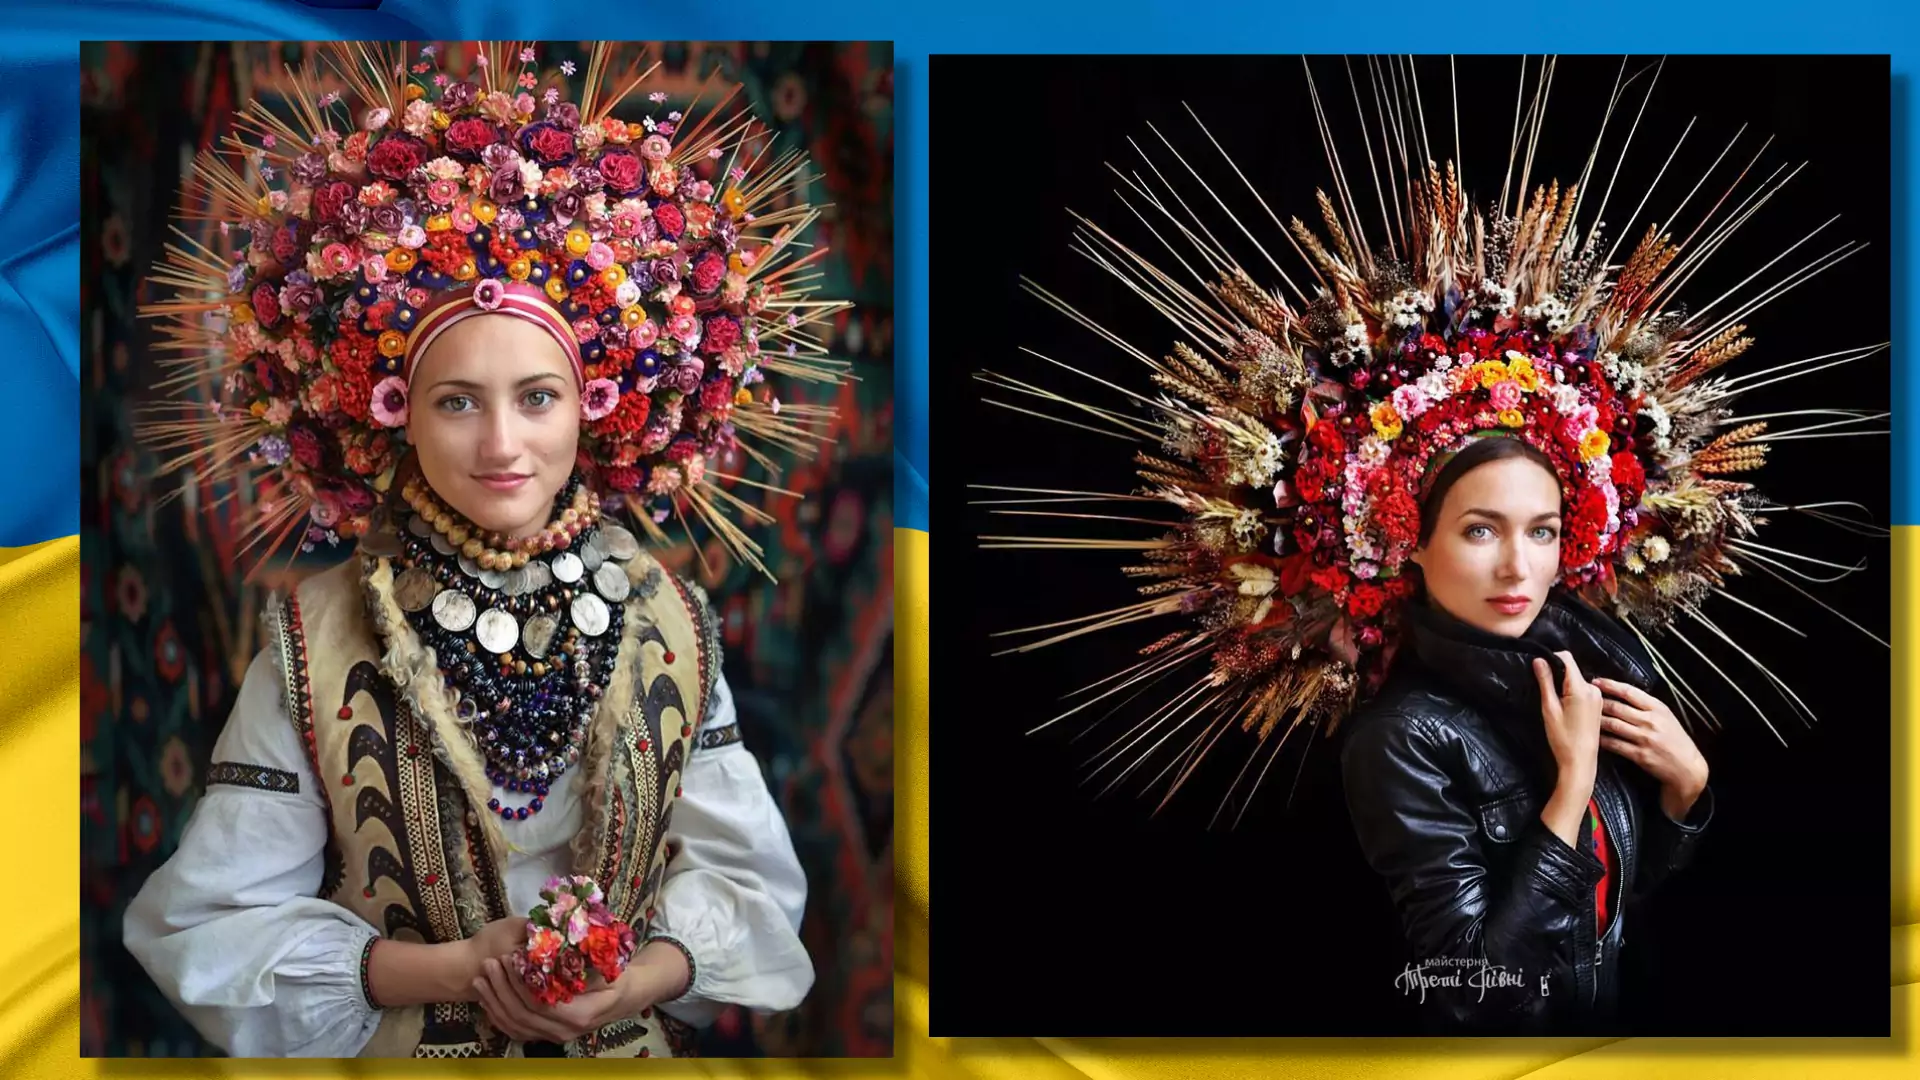 Te fotografie ukazują piękno ukraińskich strojów ludowych i niezwykłych nakryć głowy